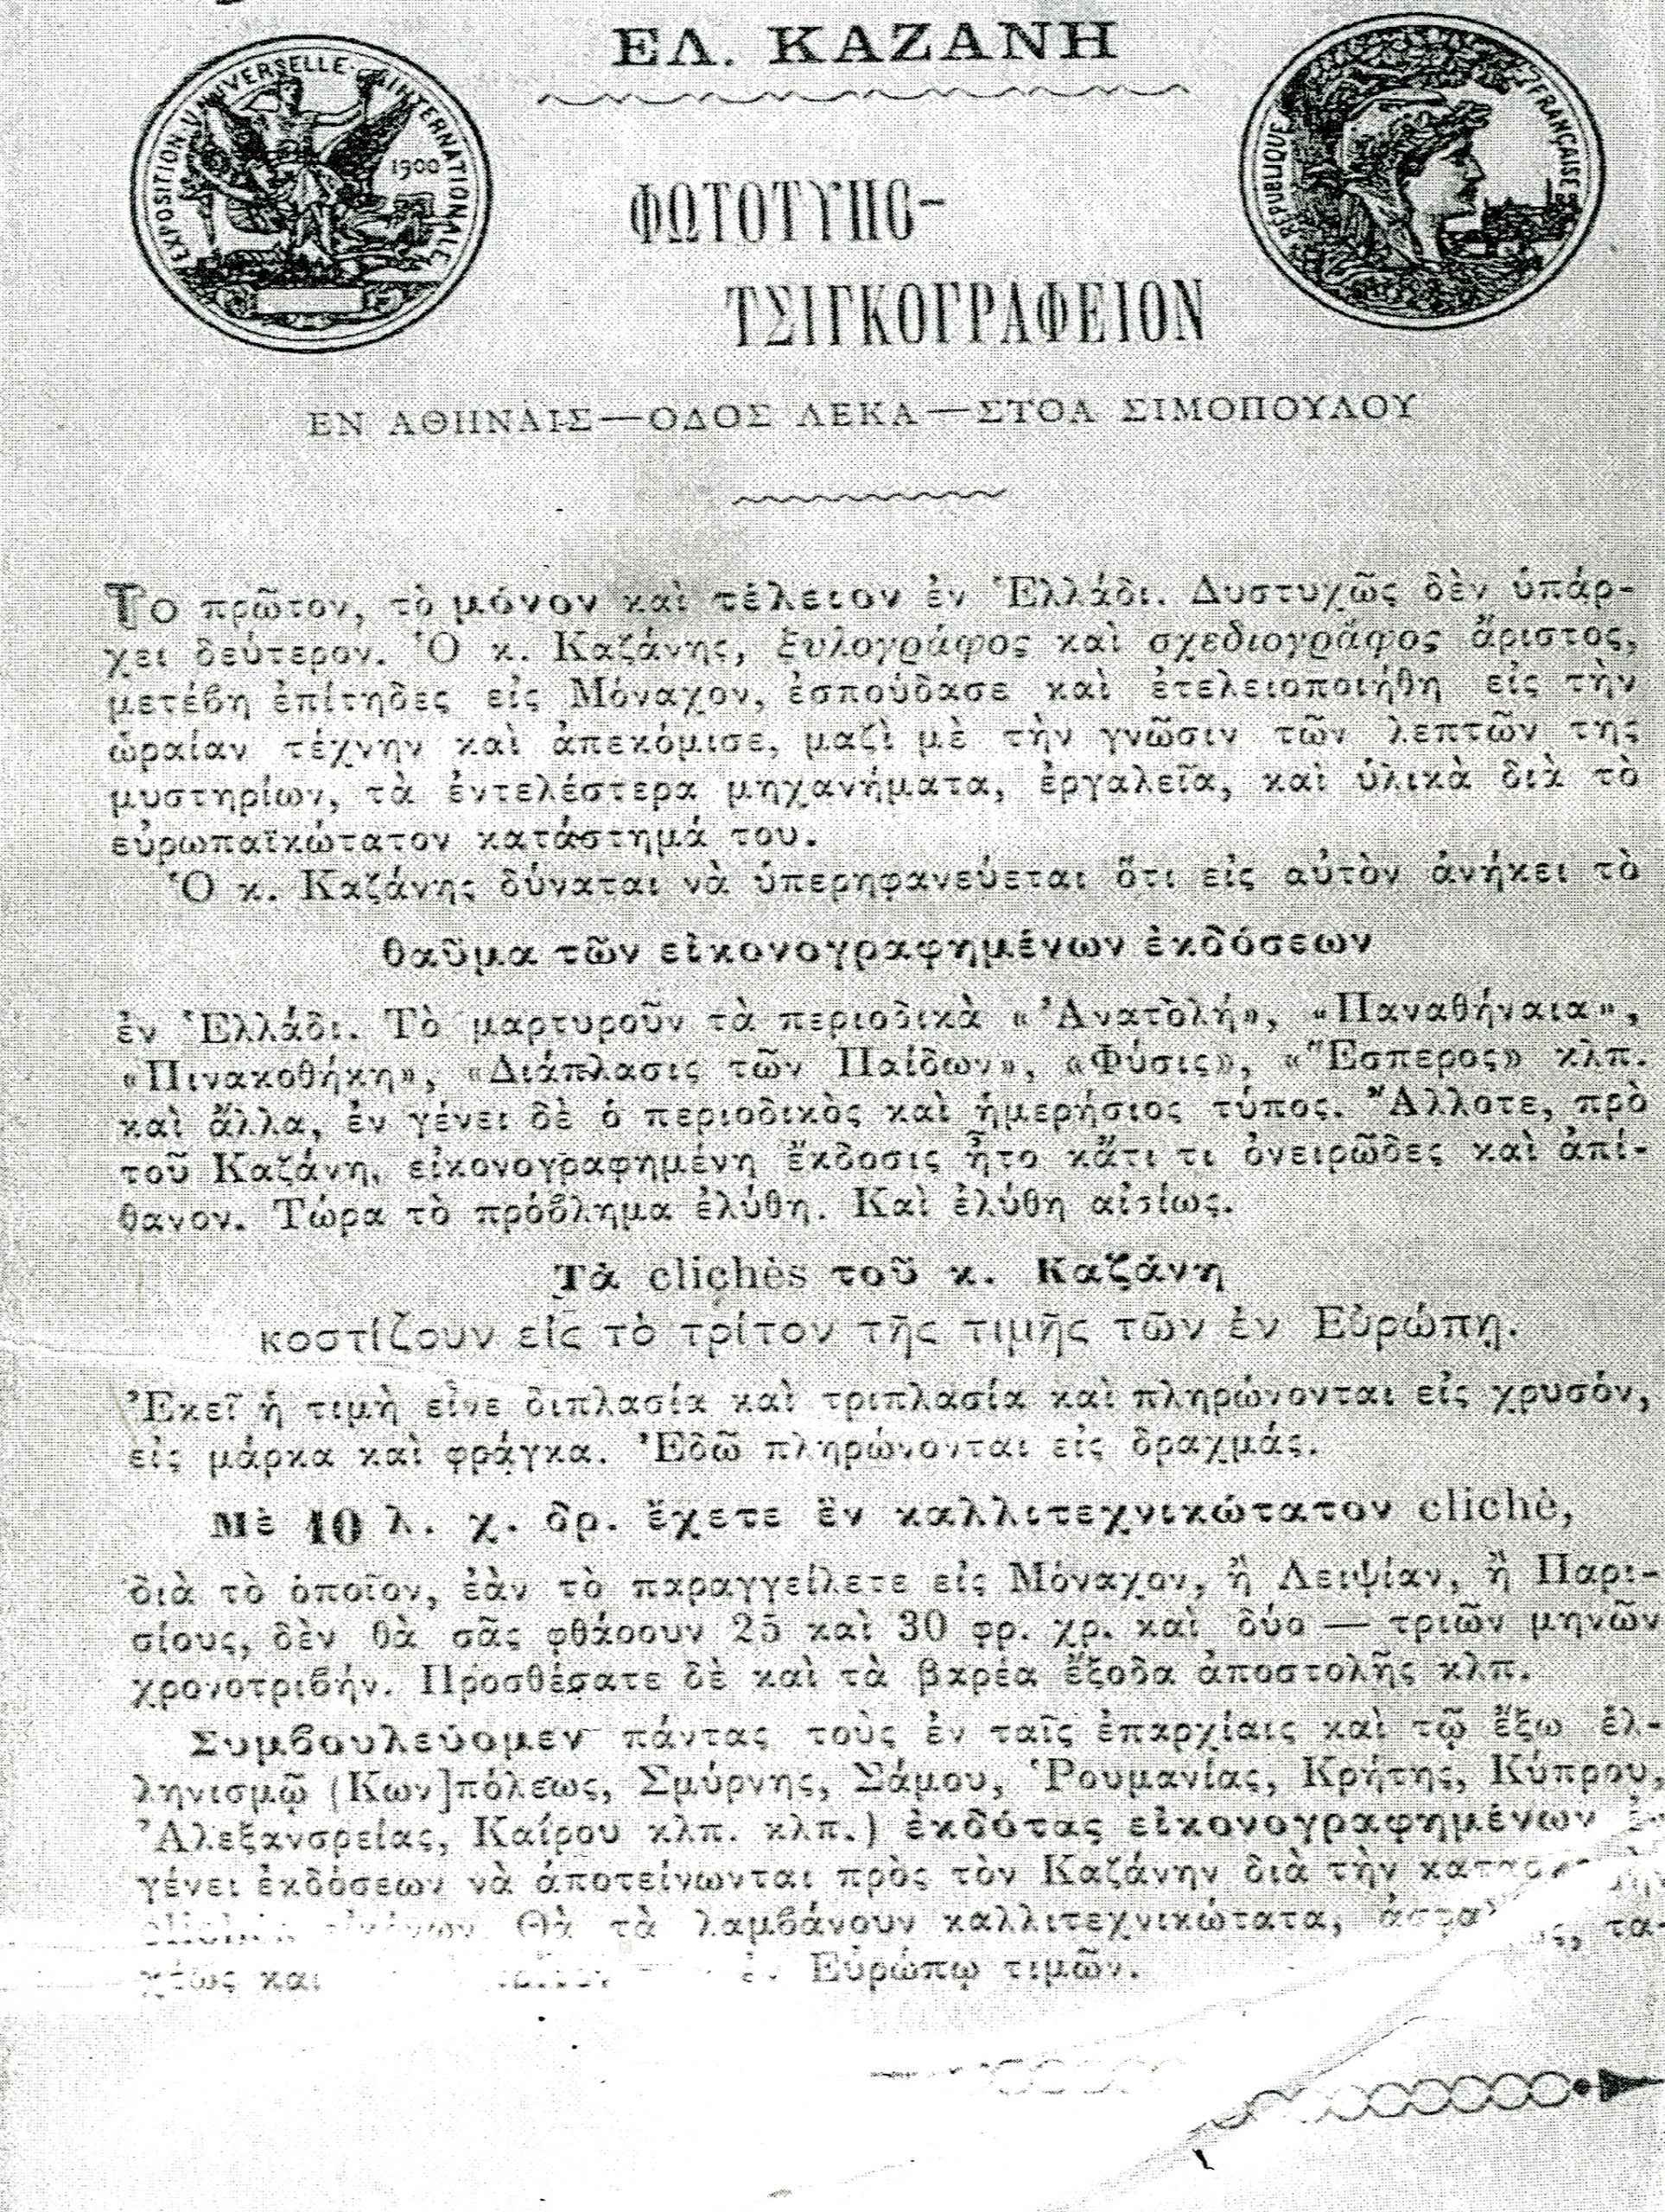 Οι πρώτες δυσφημιστικές διαφημίσεις στην Αθήνα του 19ου αιώνα - ΠΕΡΙΕΡΓΑ